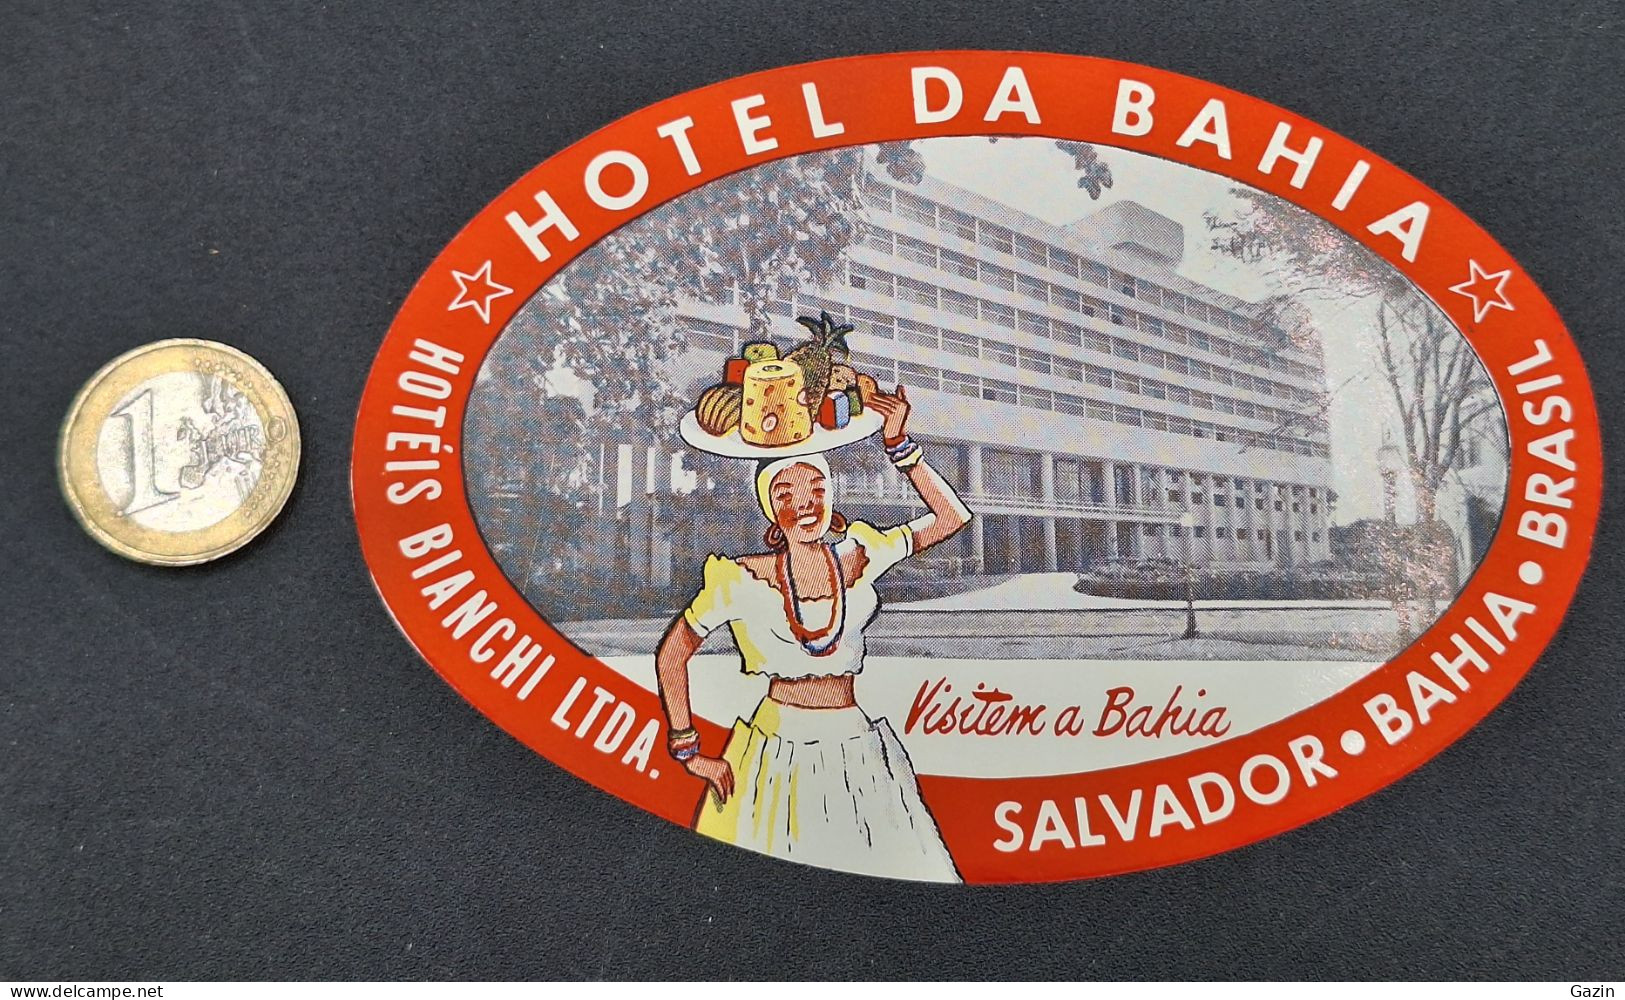 C7/3 -  Hotel Da Bahia * Hotéis Bianchi Ltda * Brasil * Luggage Lable * Rótulo * Etiqueta - Etiketten Van Hotels